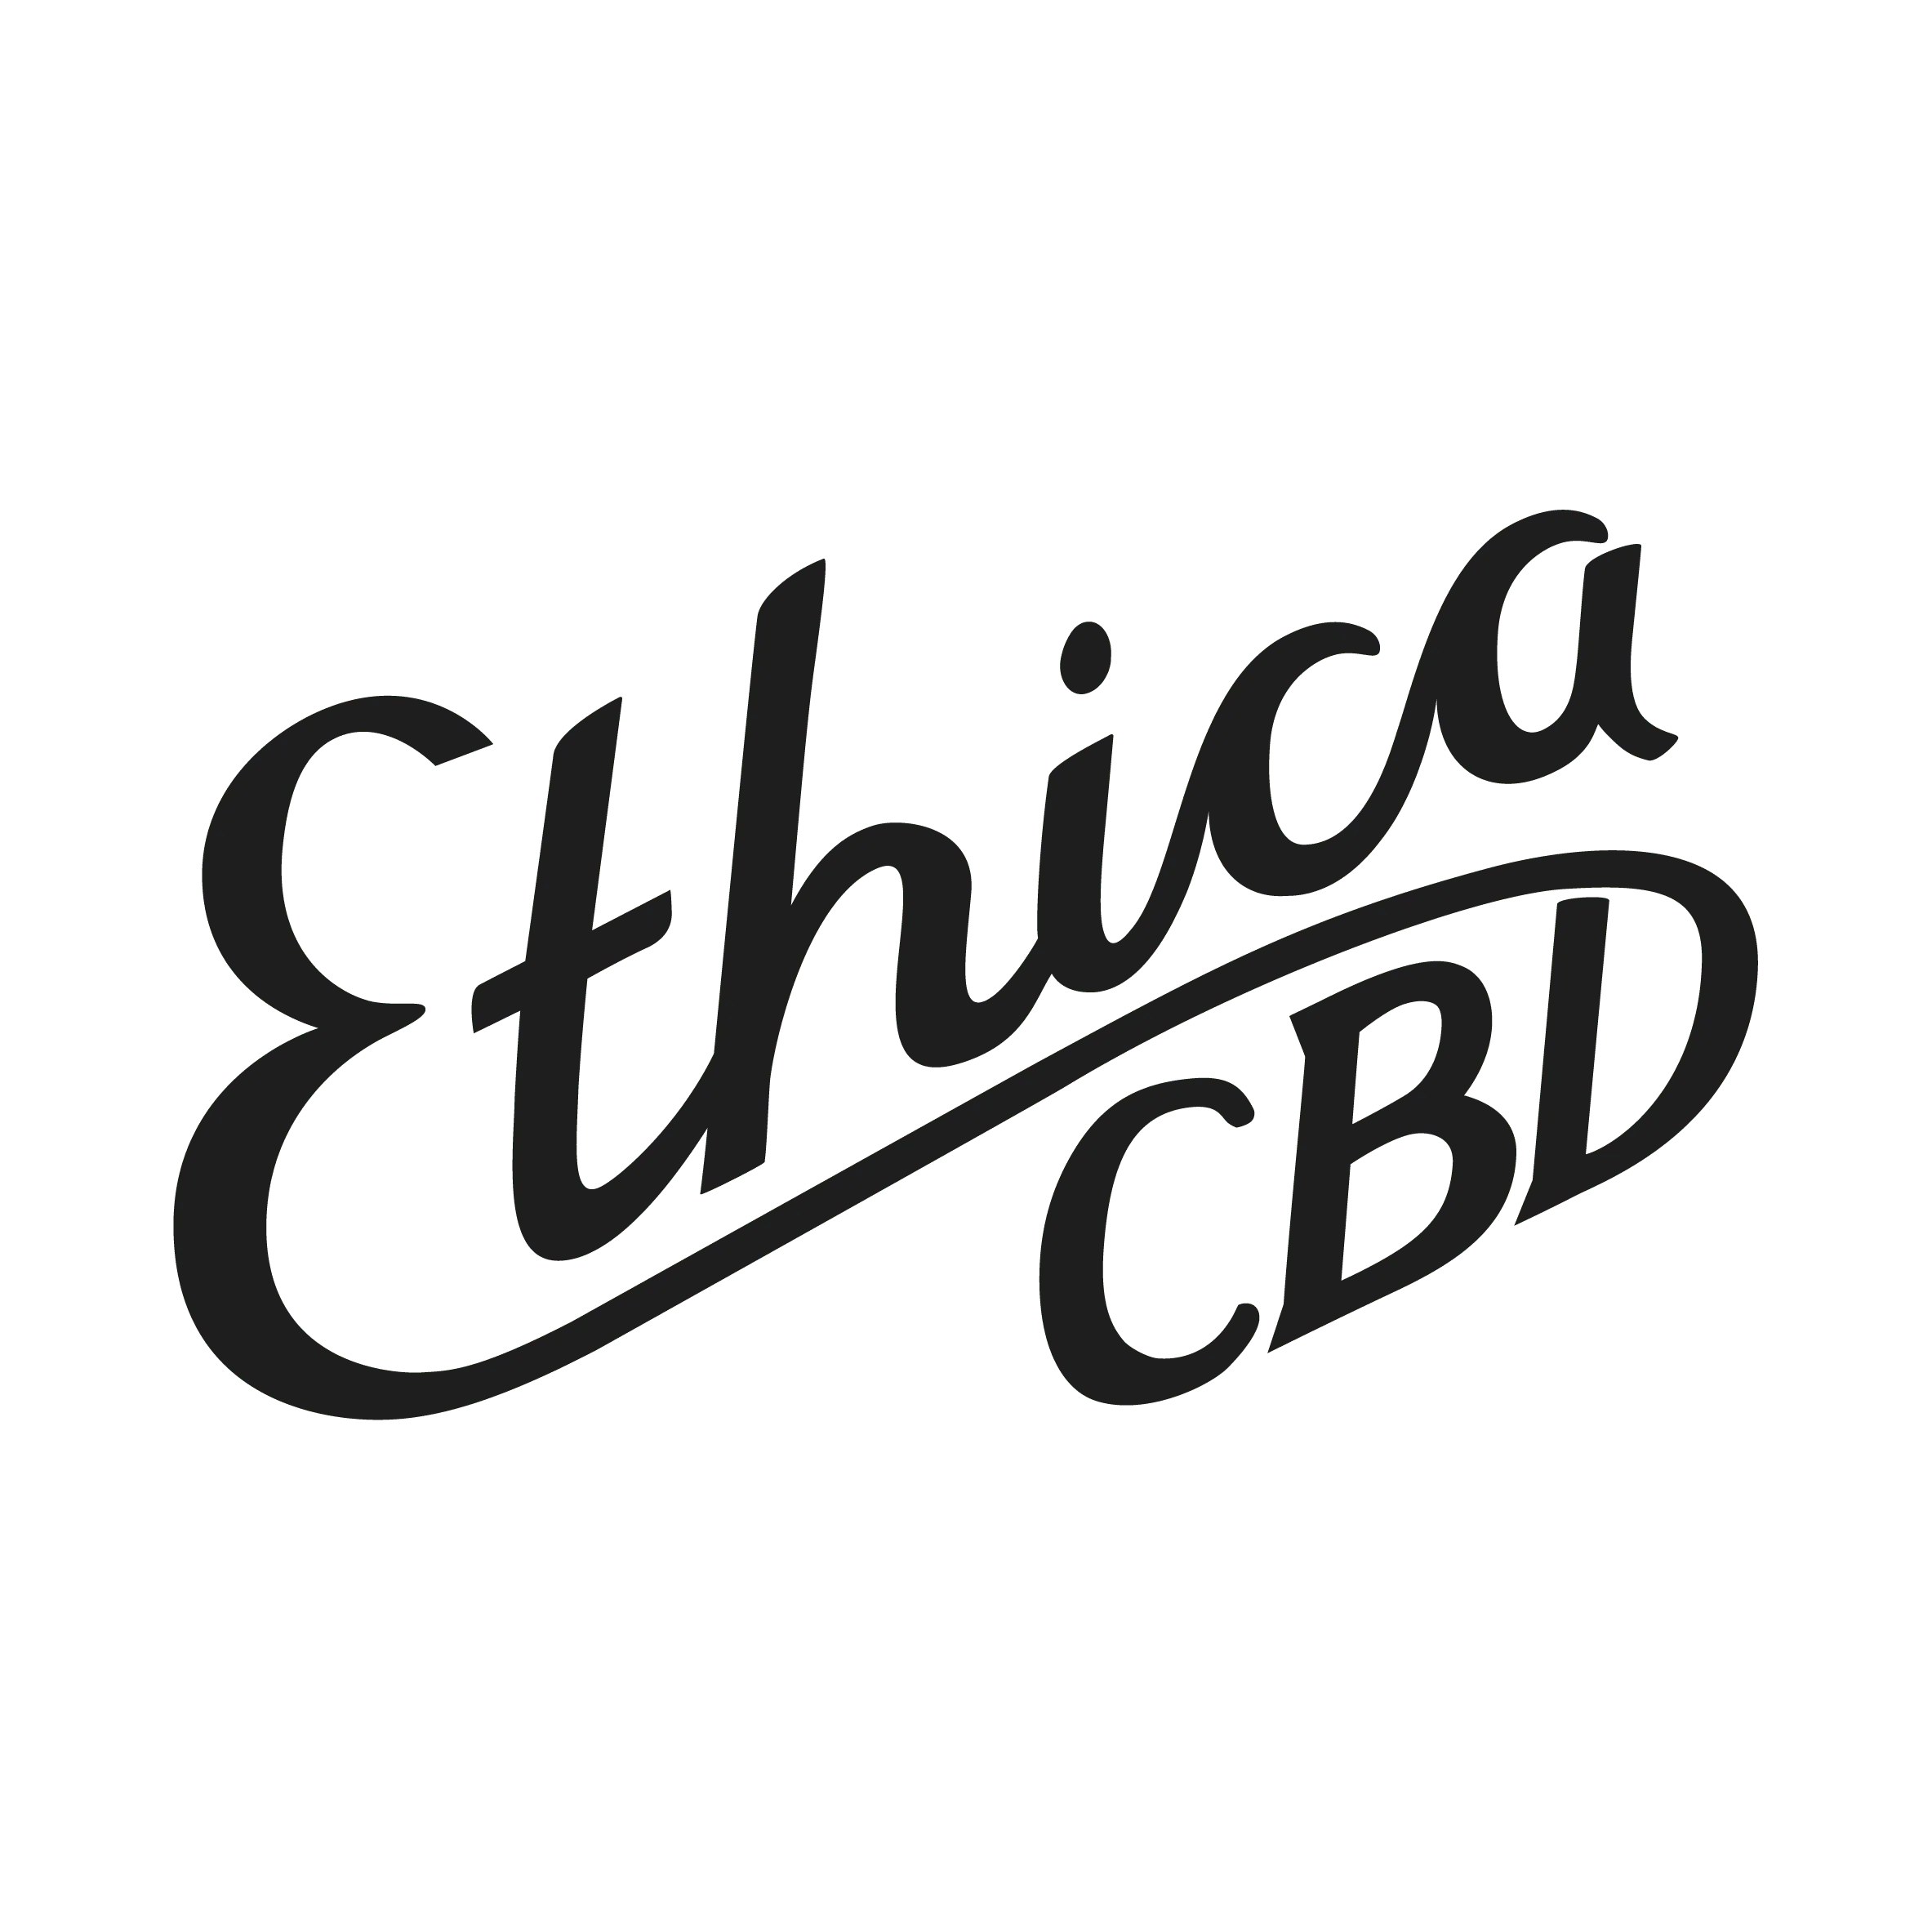 ethica cbd logo